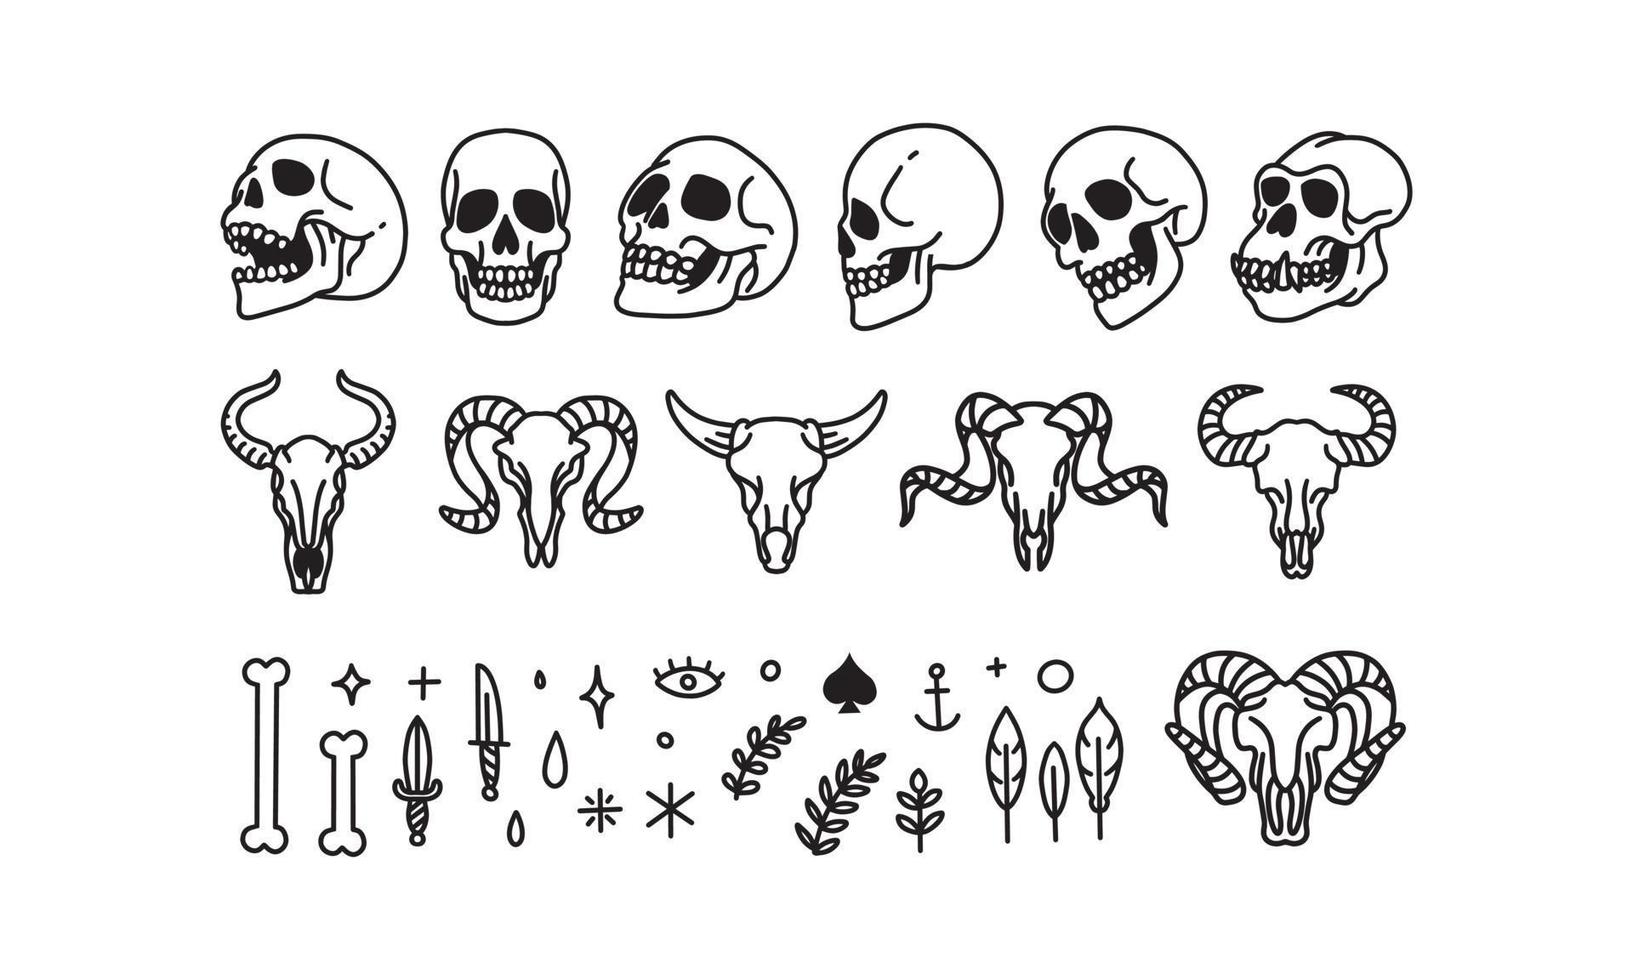 ensemble de crâne humain emblématique et d'animaux dessinés à la main. illustration vectorielle de dessin au trait vecteur